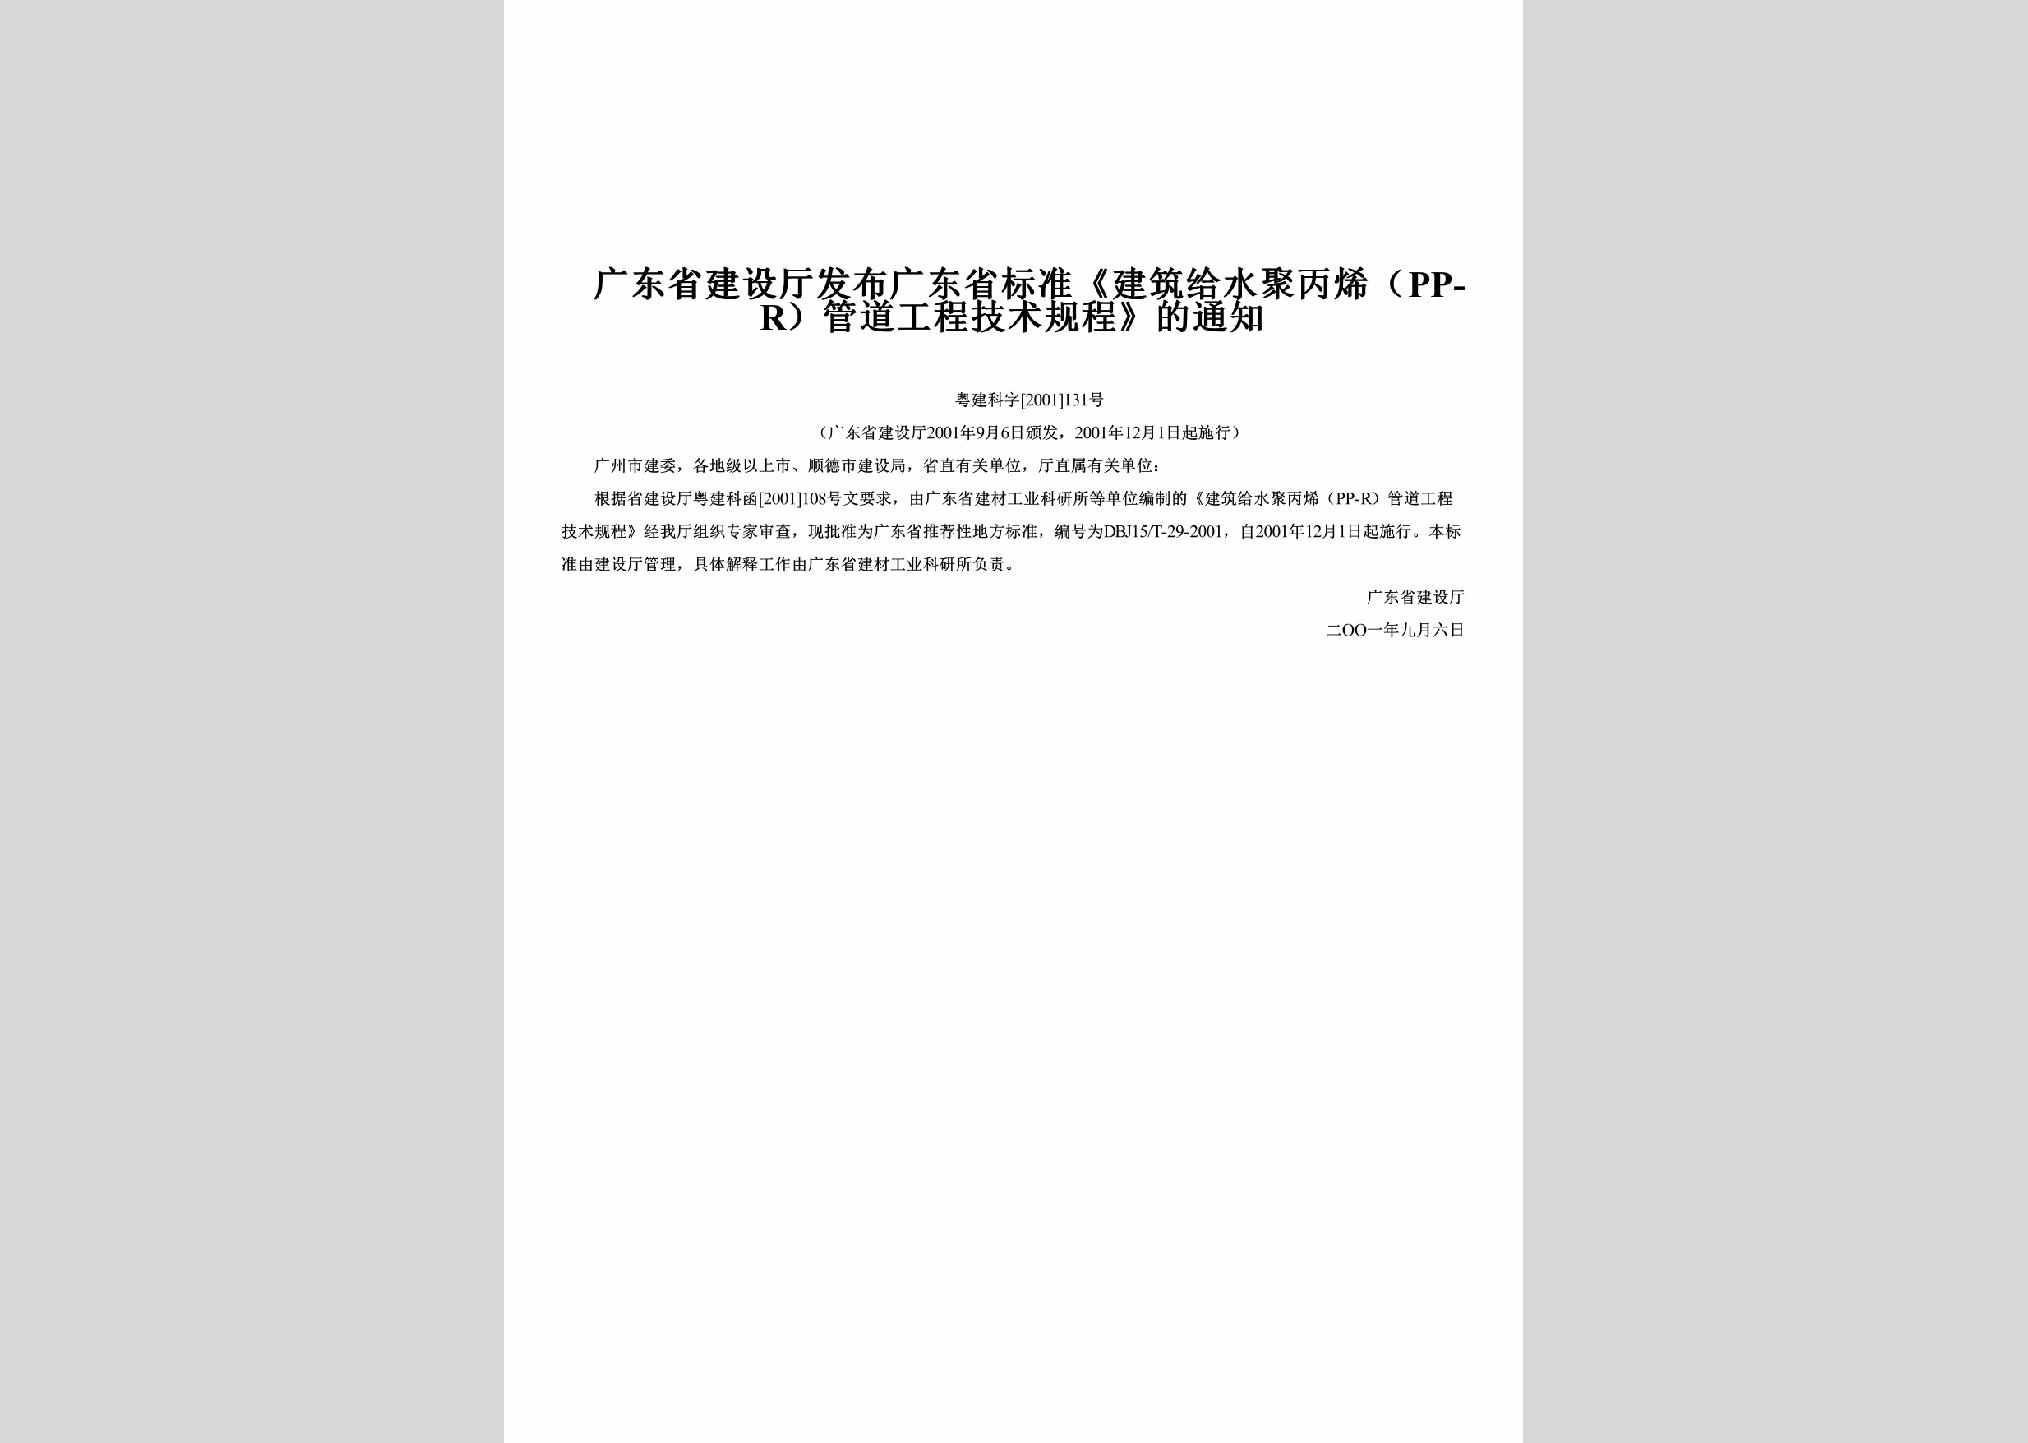 粤建科字[2001]131号：发布广东省标准《建筑给水聚丙烯（PP-R）管道工程技术规程》的通知